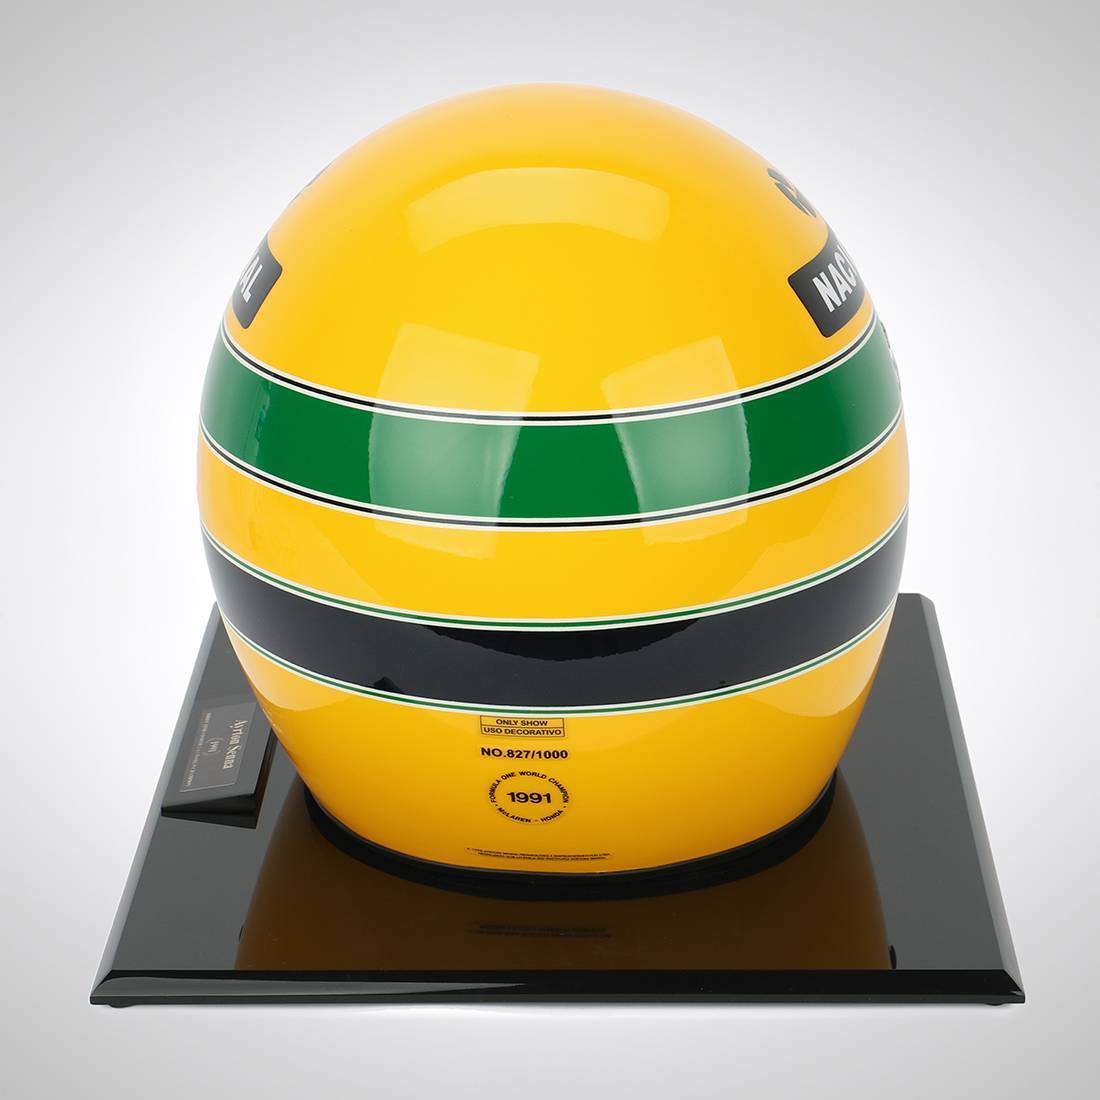 Ayrton Senna 1991 1:1 Official Promo Helmet